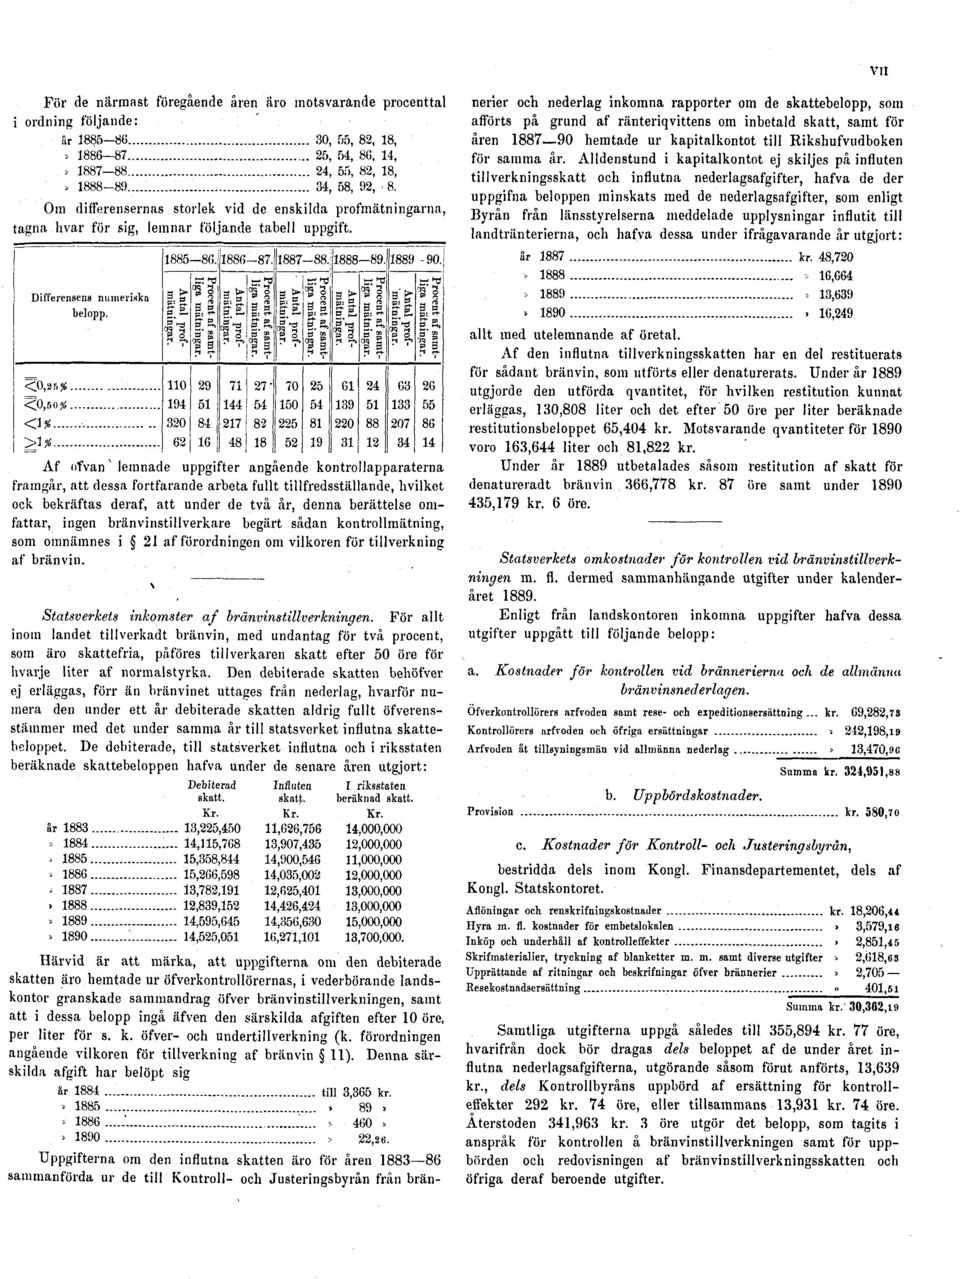 af ränteriqvittens om inbetald skatt, samt för åren 1887 90 hemtade ur kapitalkontot till Rikshufvudboken för samma år.